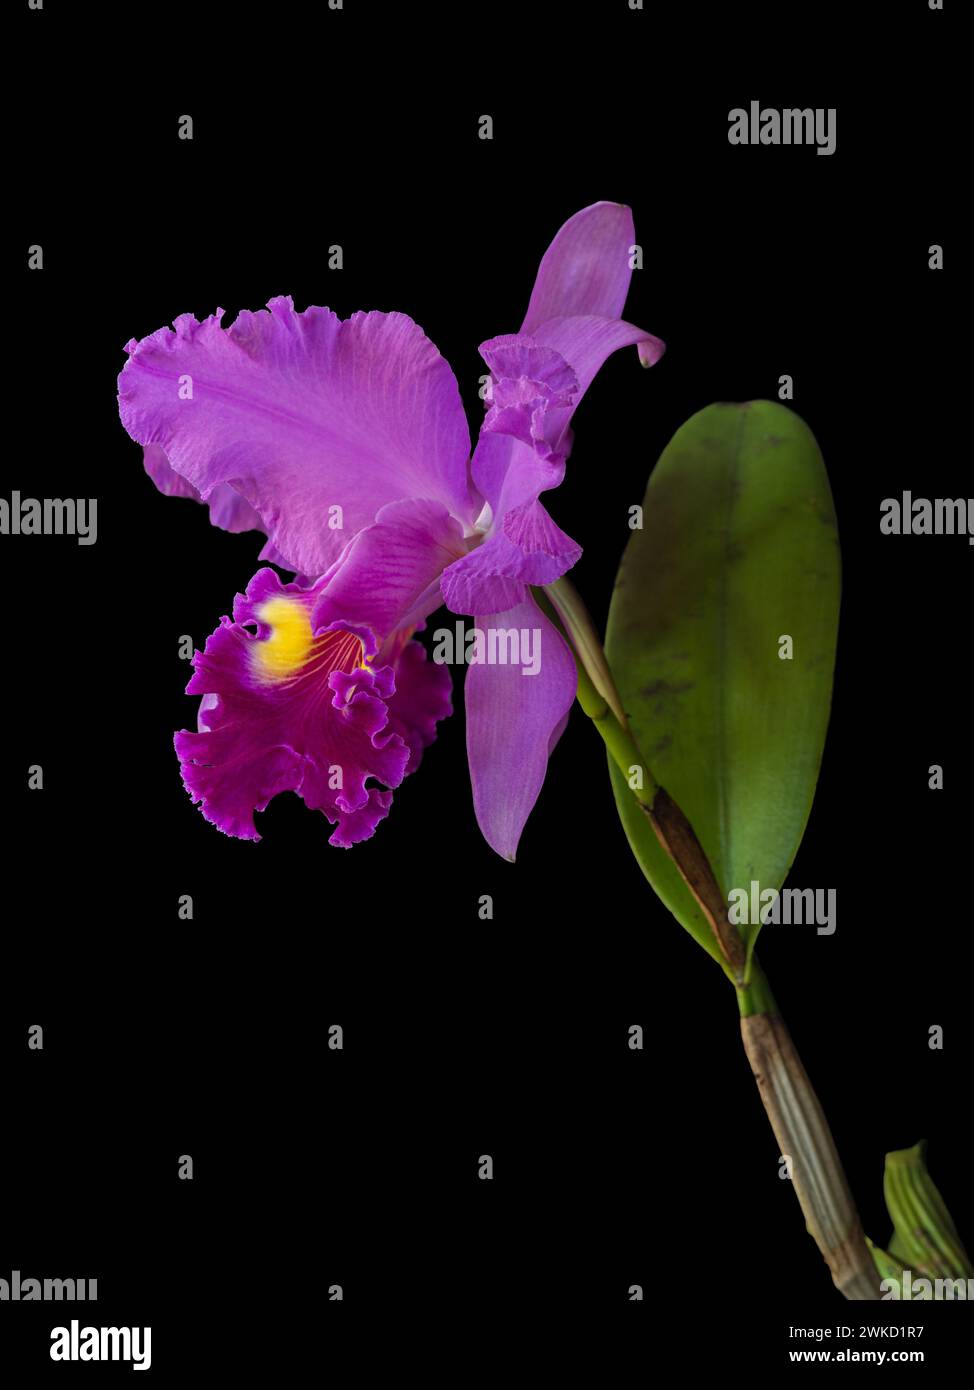 Gros plan vue verticale de spectaculaire fleur d'orchidée hybride cattleya rose violet vif et jaune doré isolée sur fond noir Banque D'Images